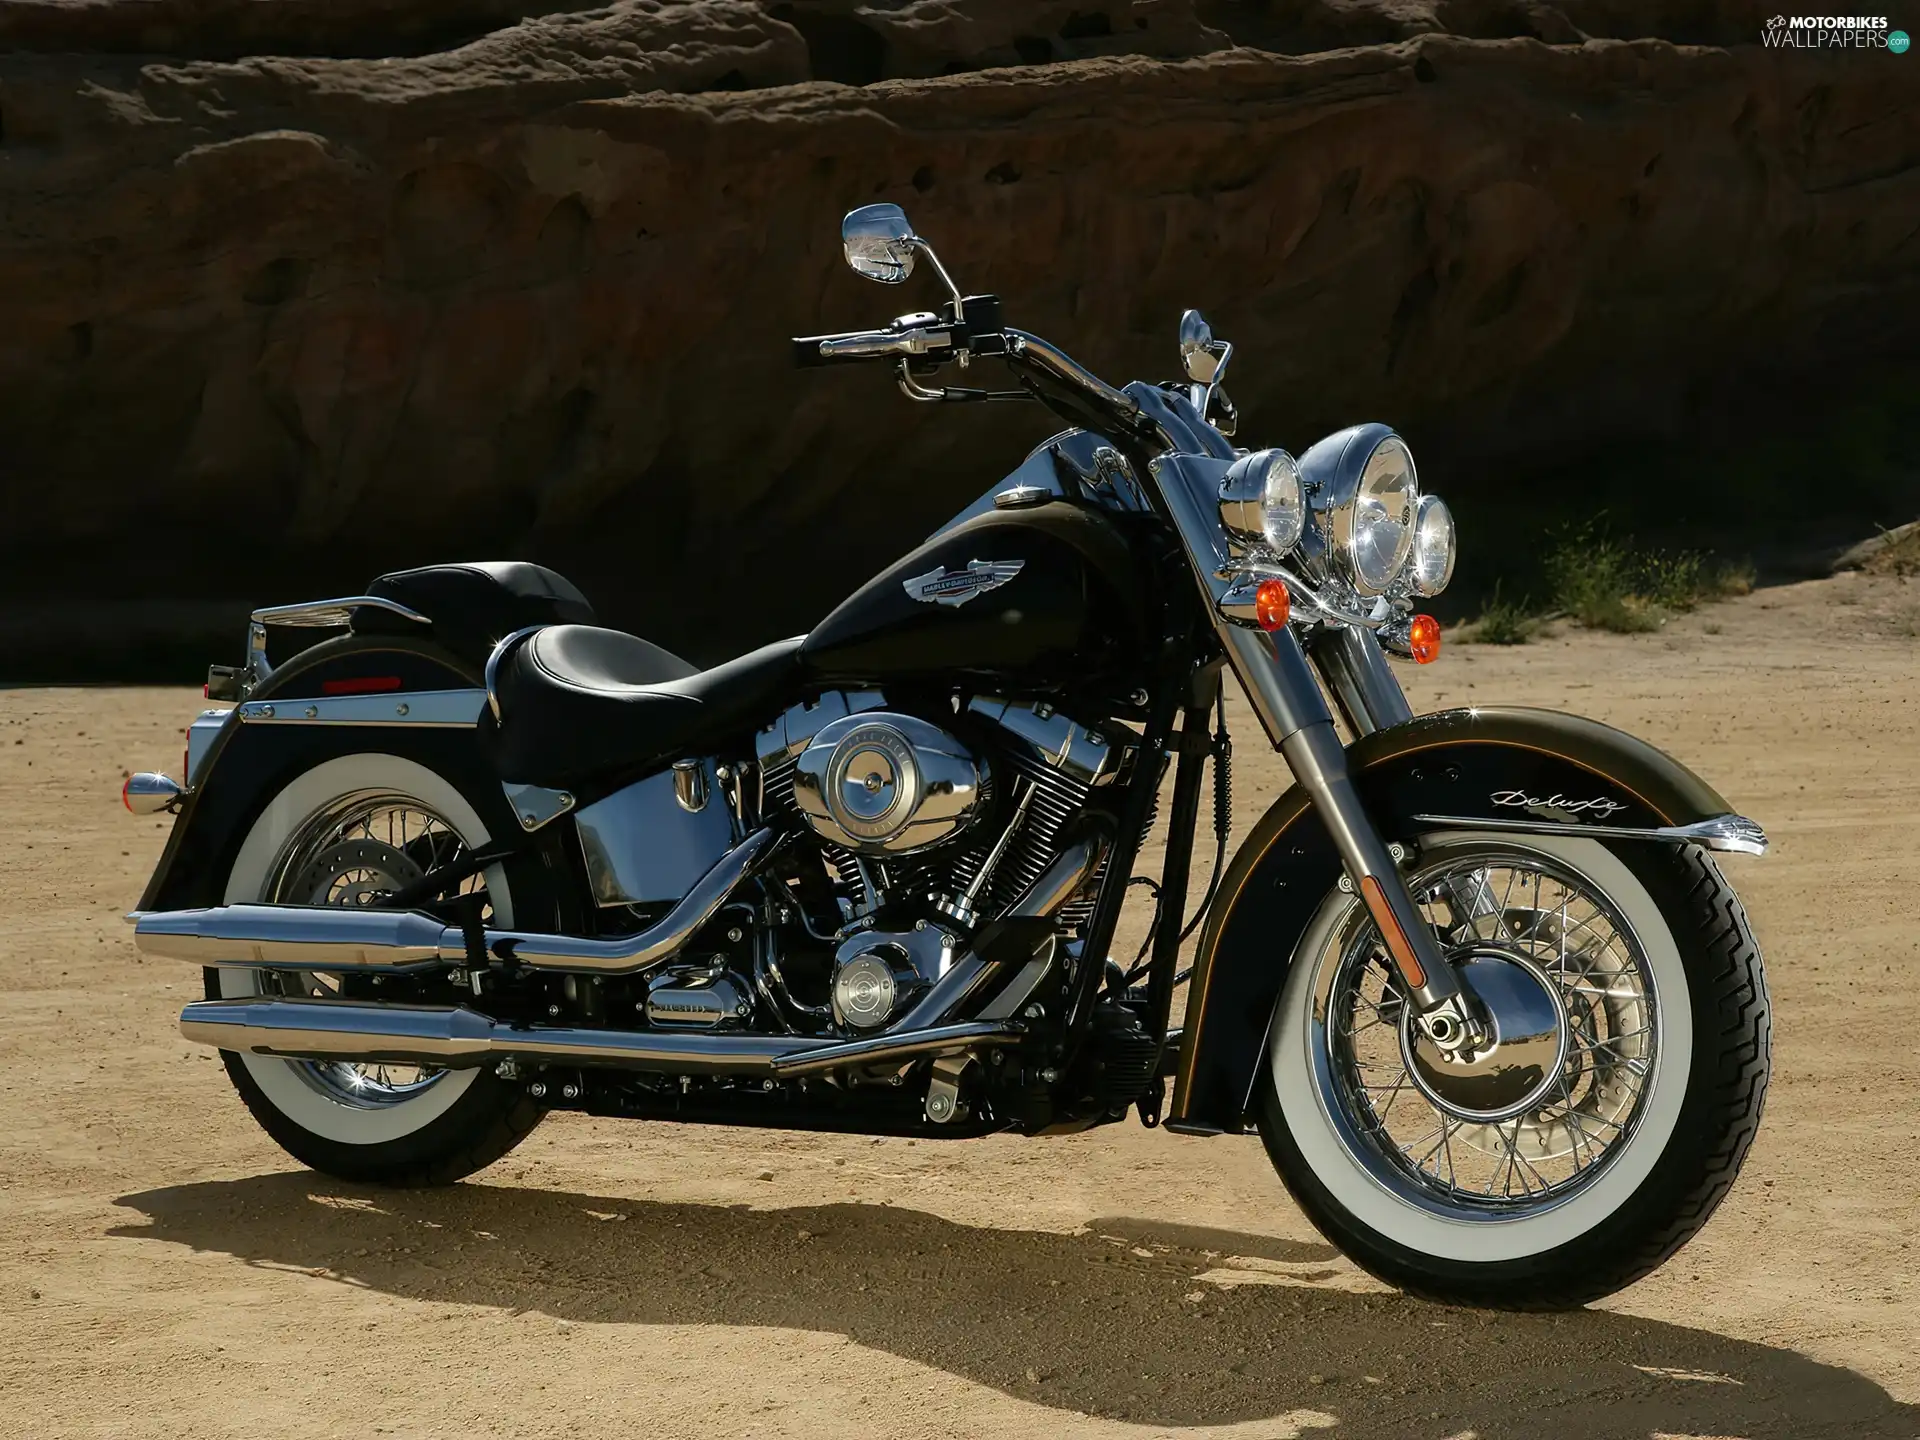 Engine, Harley Davidson Softail Fat Boy, chrome